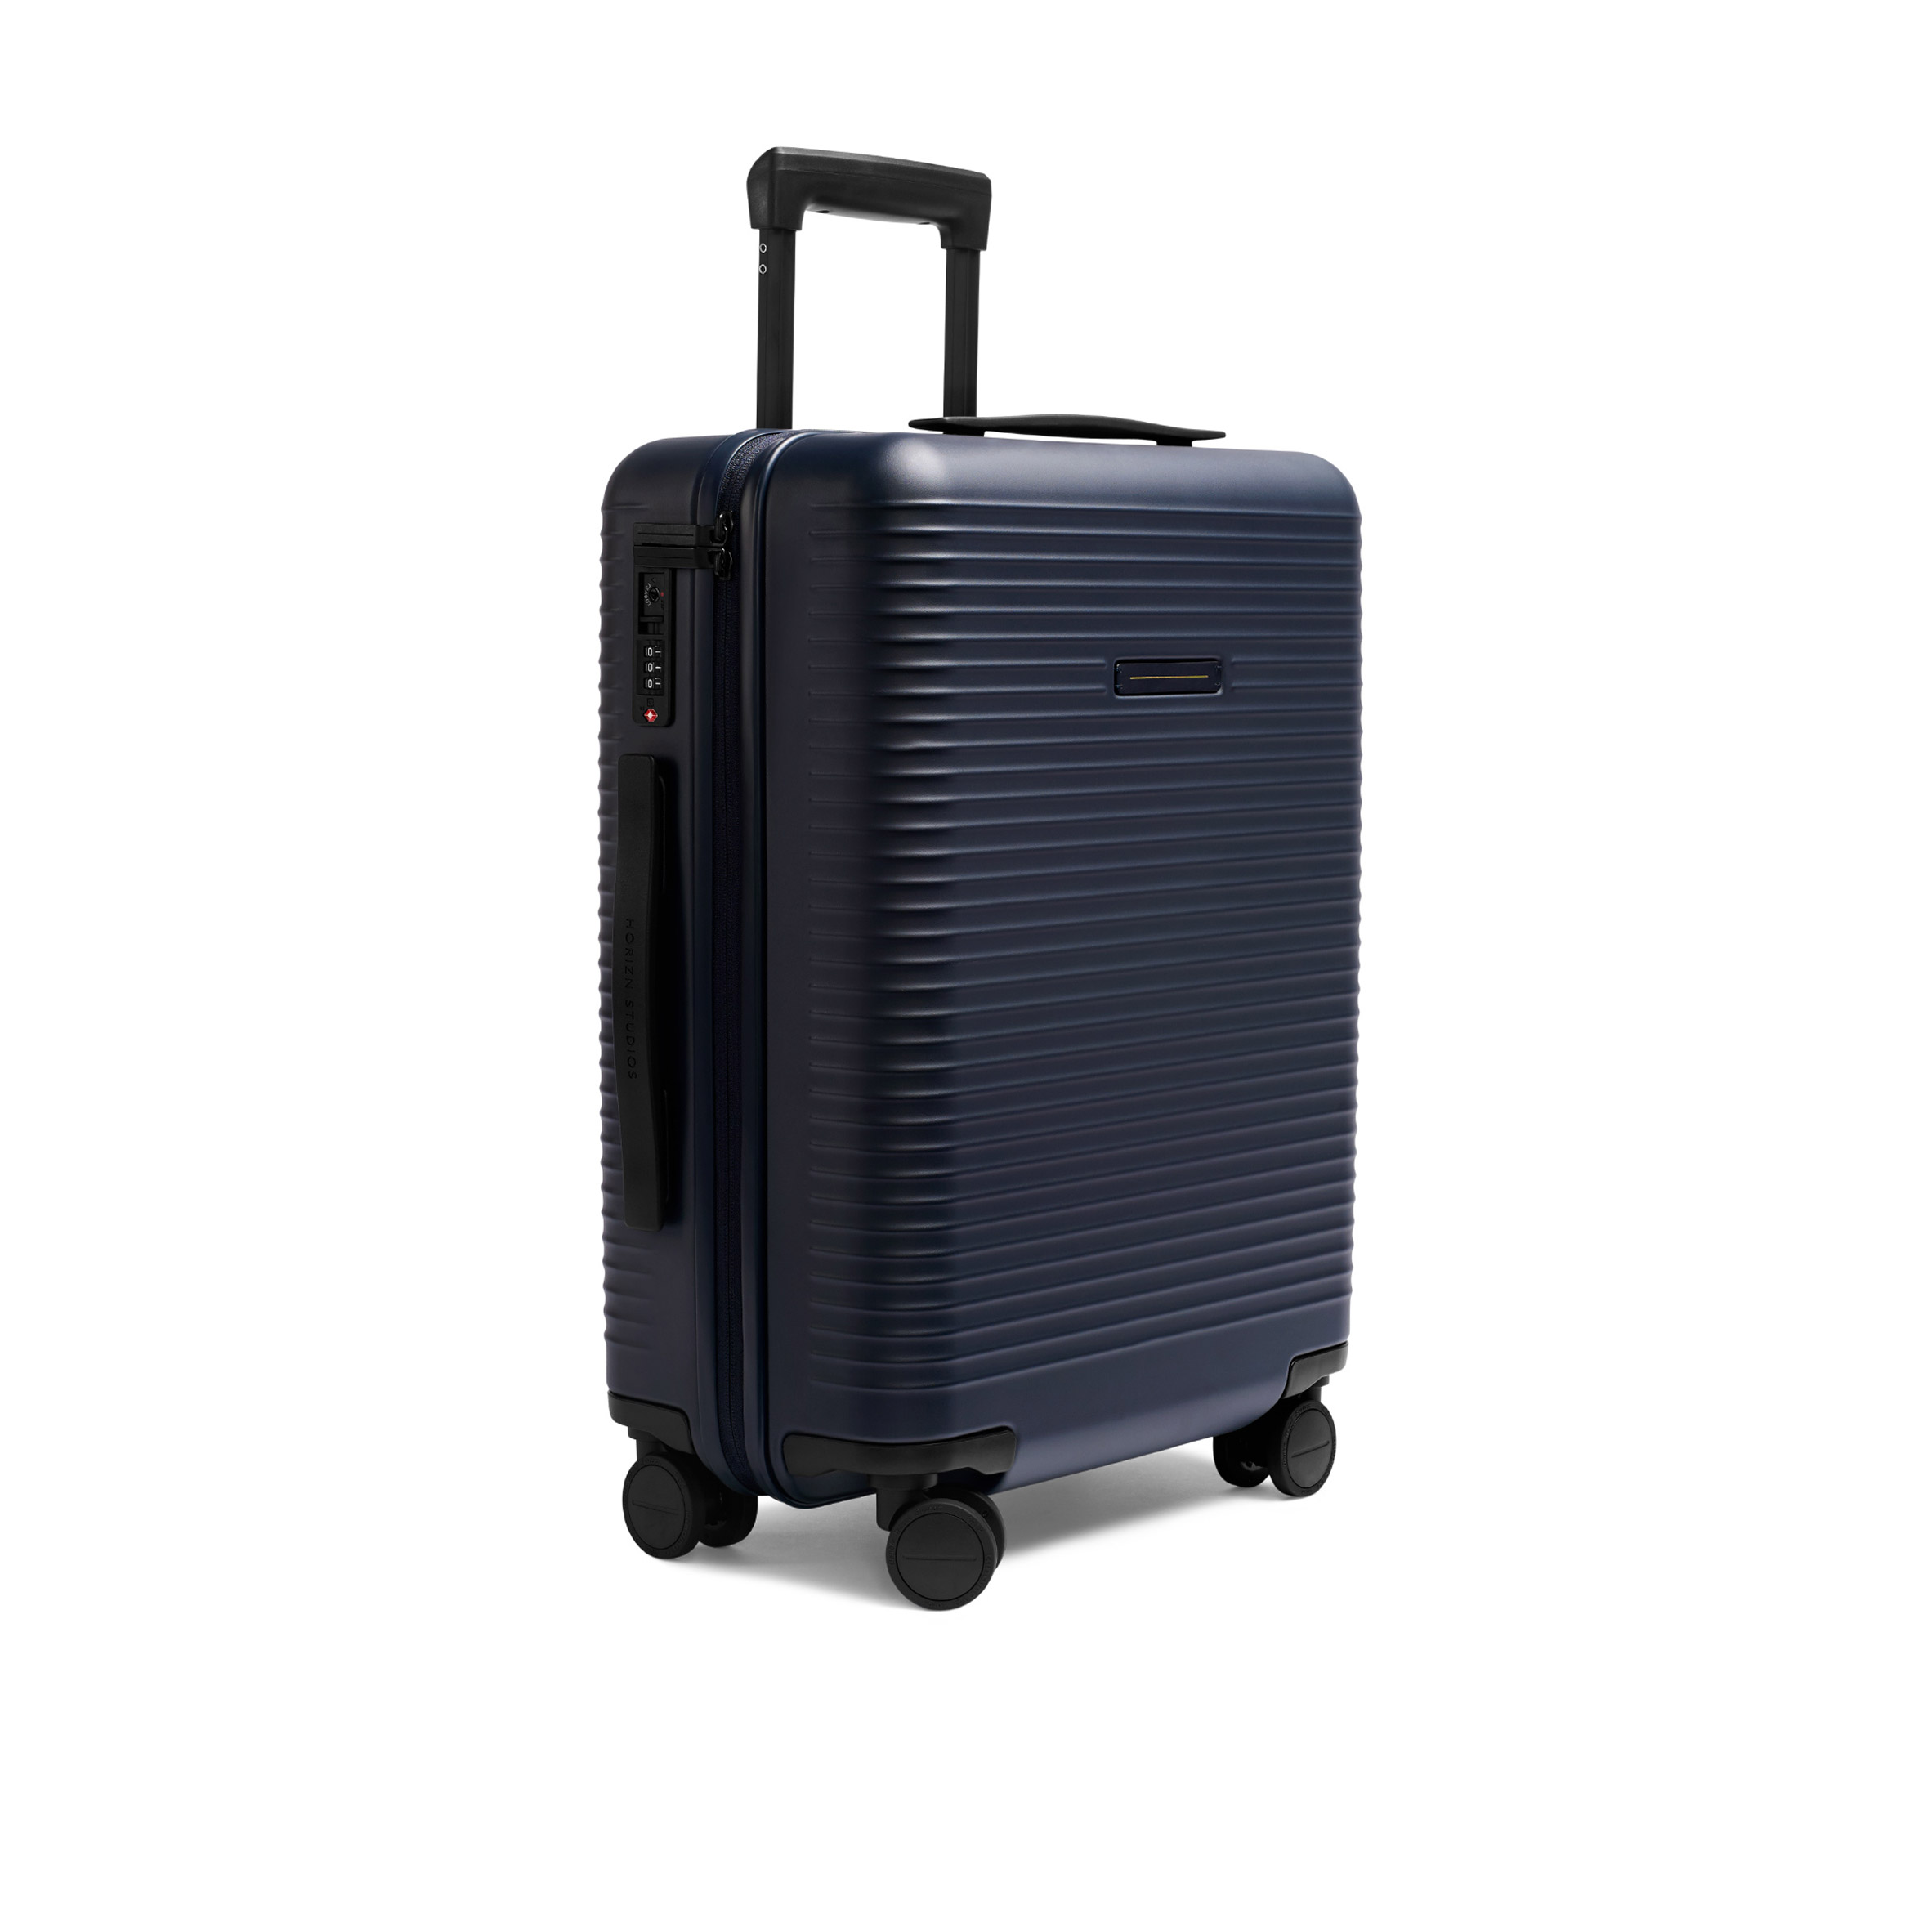 Case Luggage on X: 